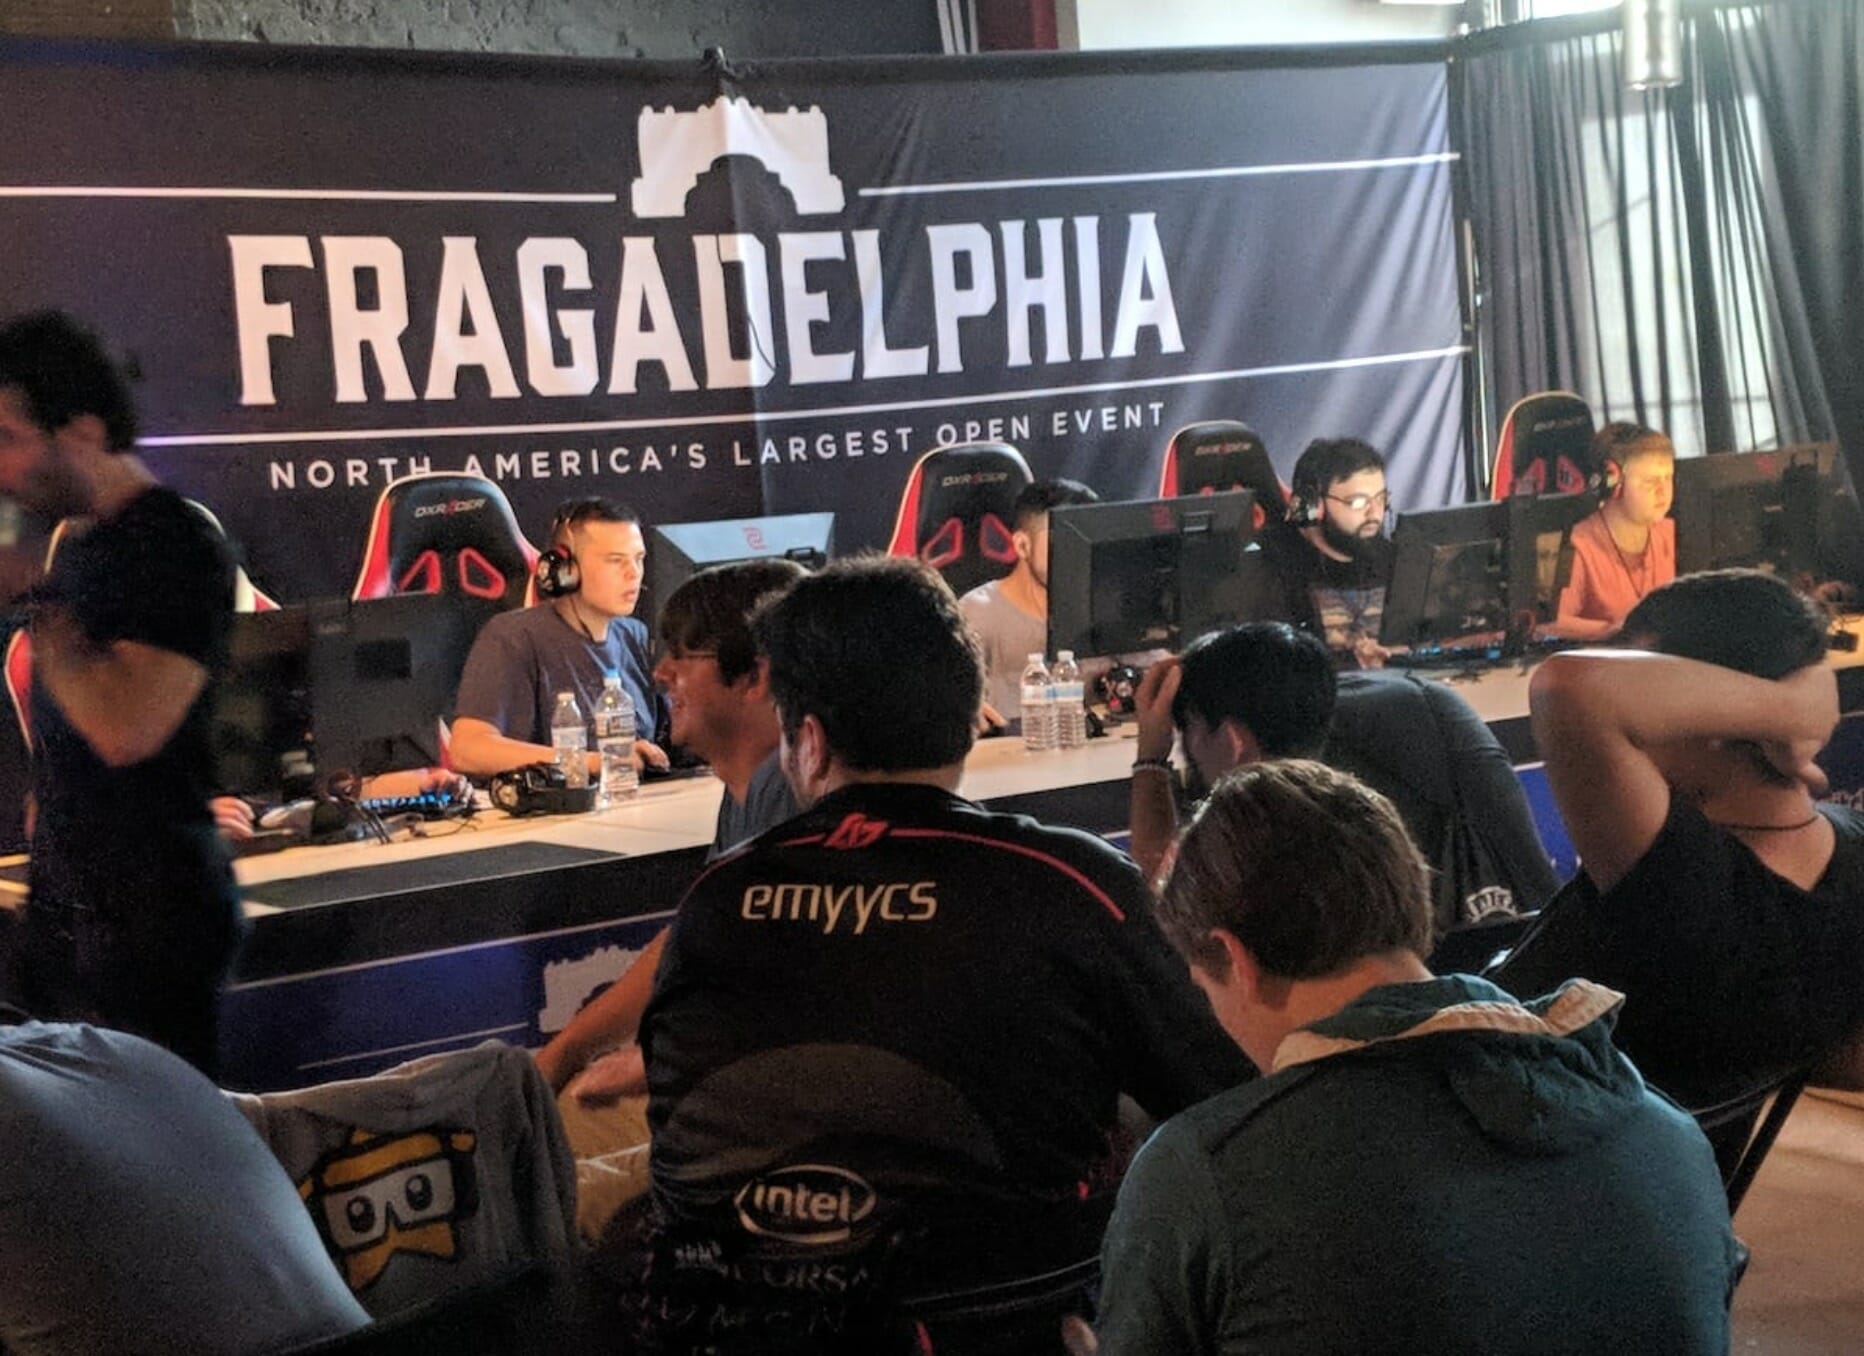 Fragadelphia 15 players